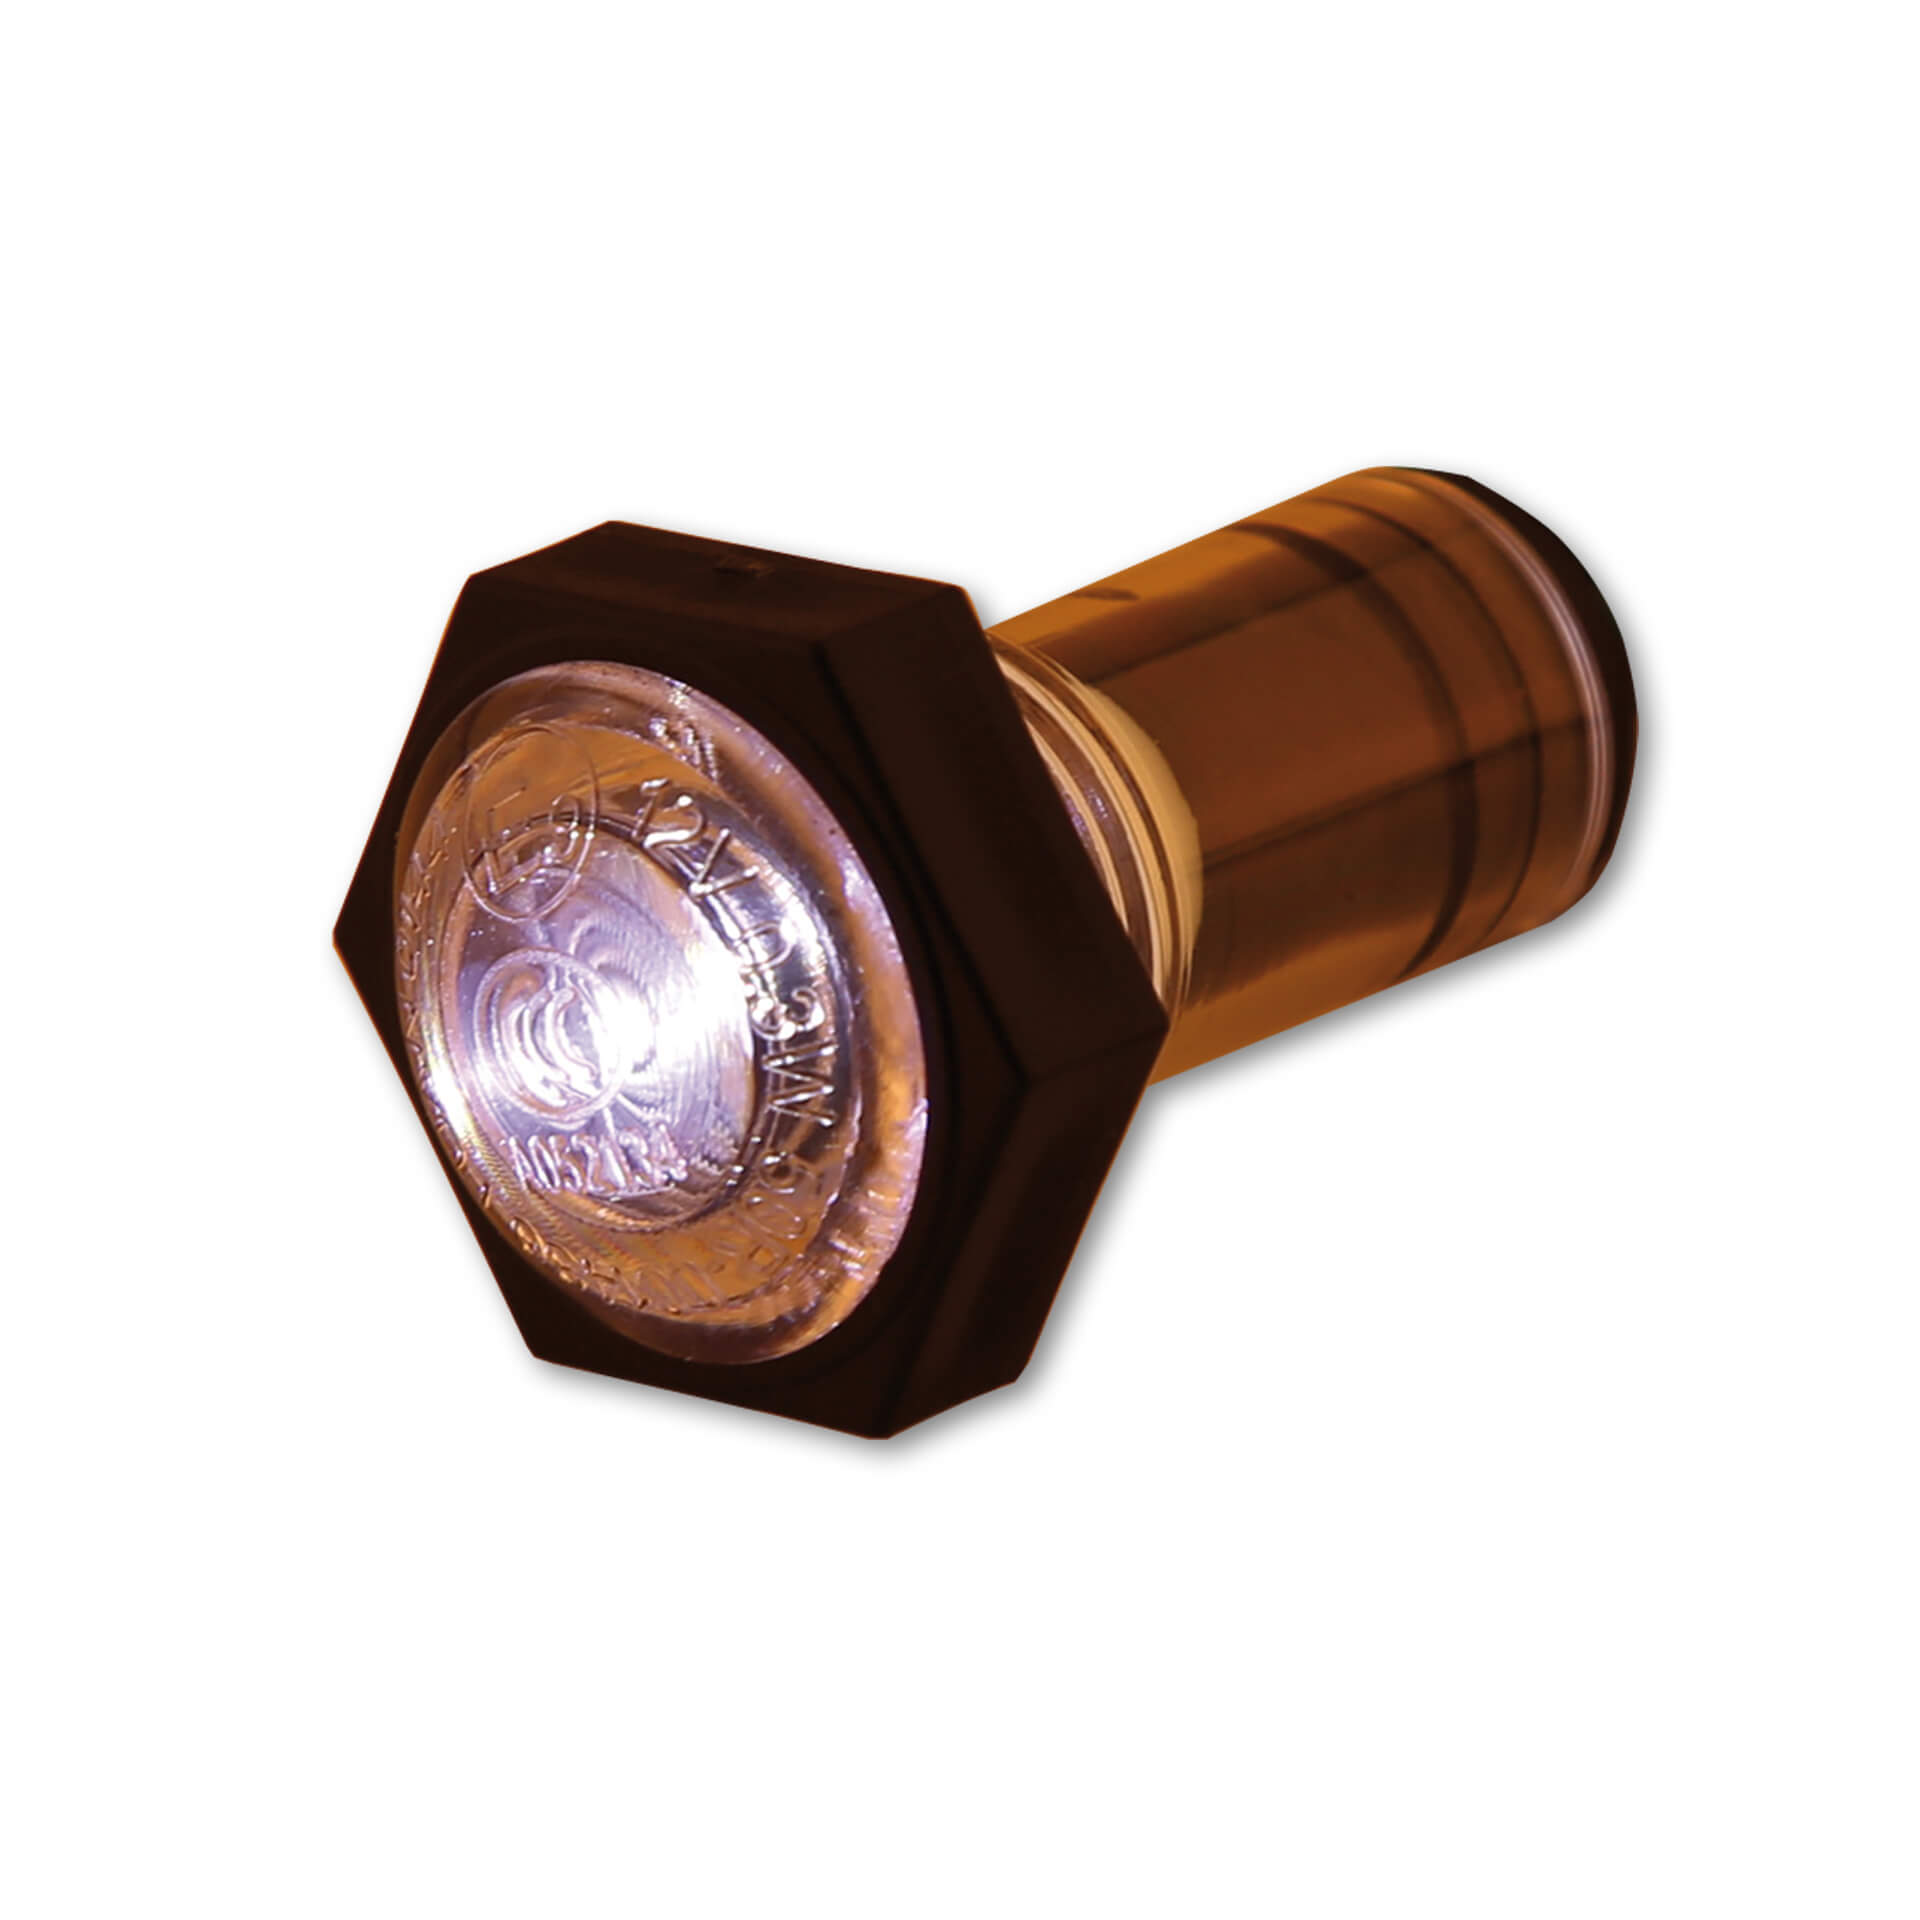 shin_yo Uniwersalne światło postojowe LED, średnica soczewki 23 mm, 12V